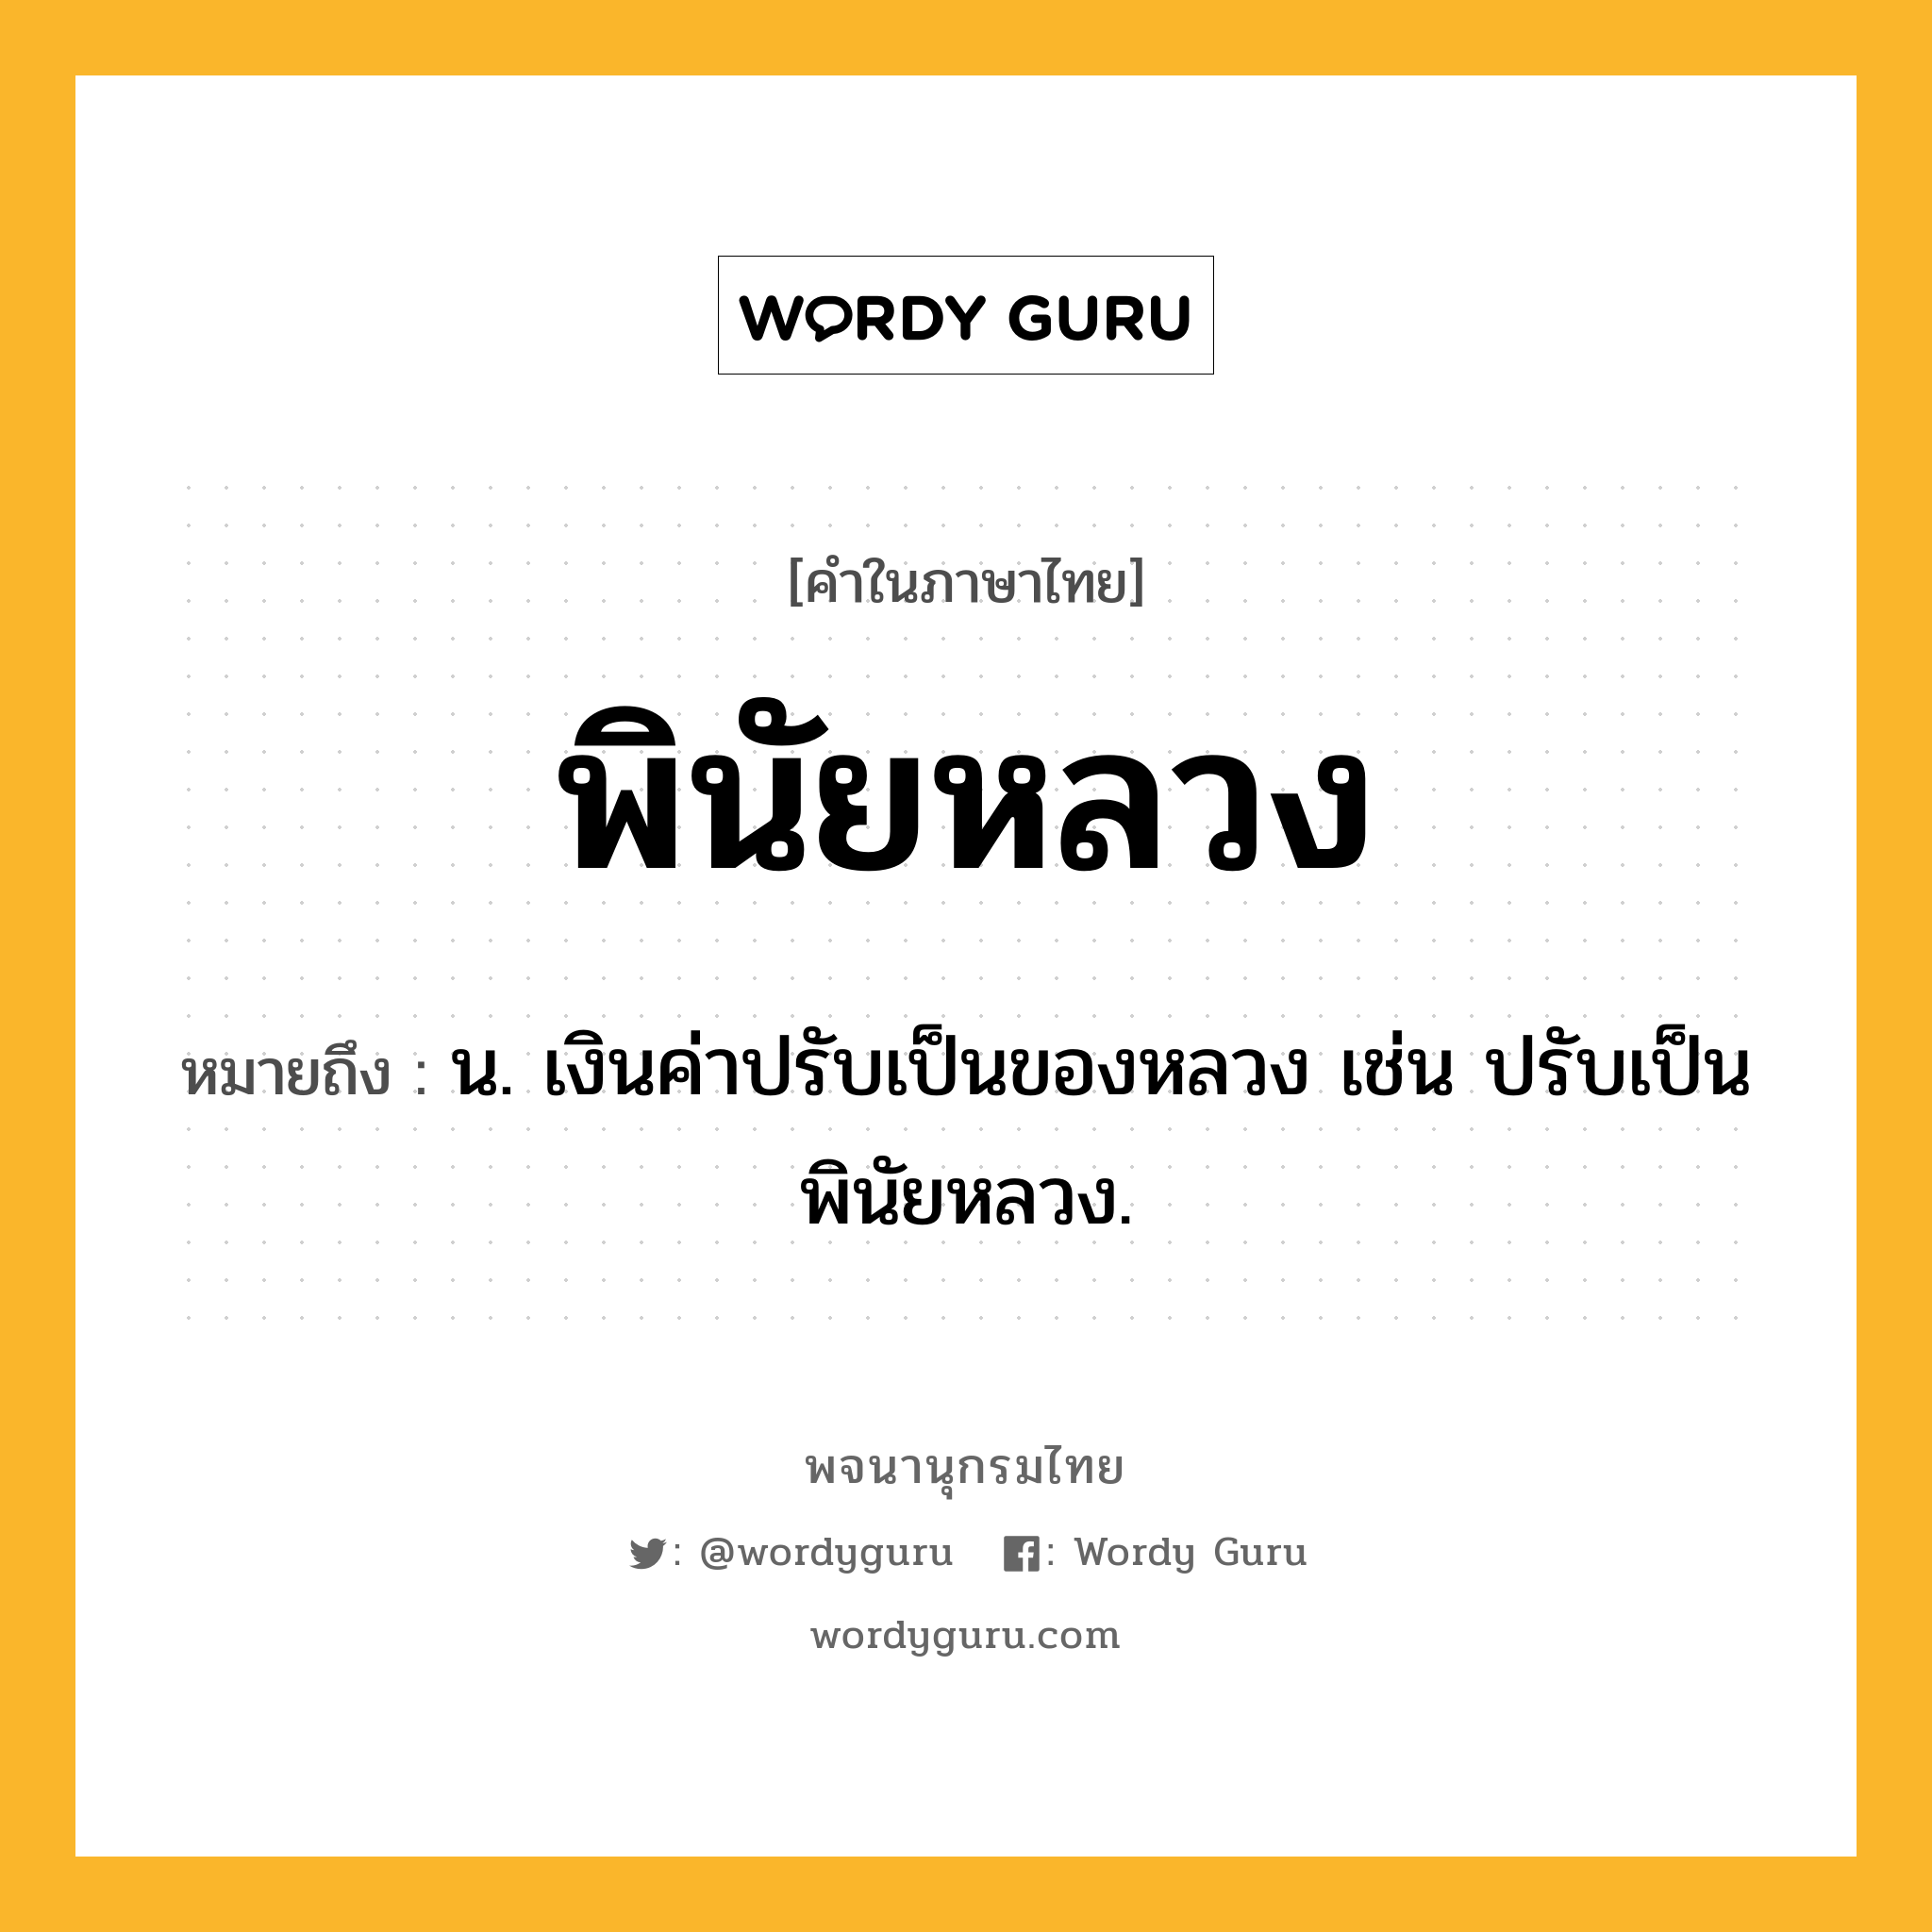 พินัยหลวง หมายถึงอะไร?, คำในภาษาไทย พินัยหลวง หมายถึง น. เงินค่าปรับเป็นของหลวง เช่น ปรับเป็นพินัยหลวง.